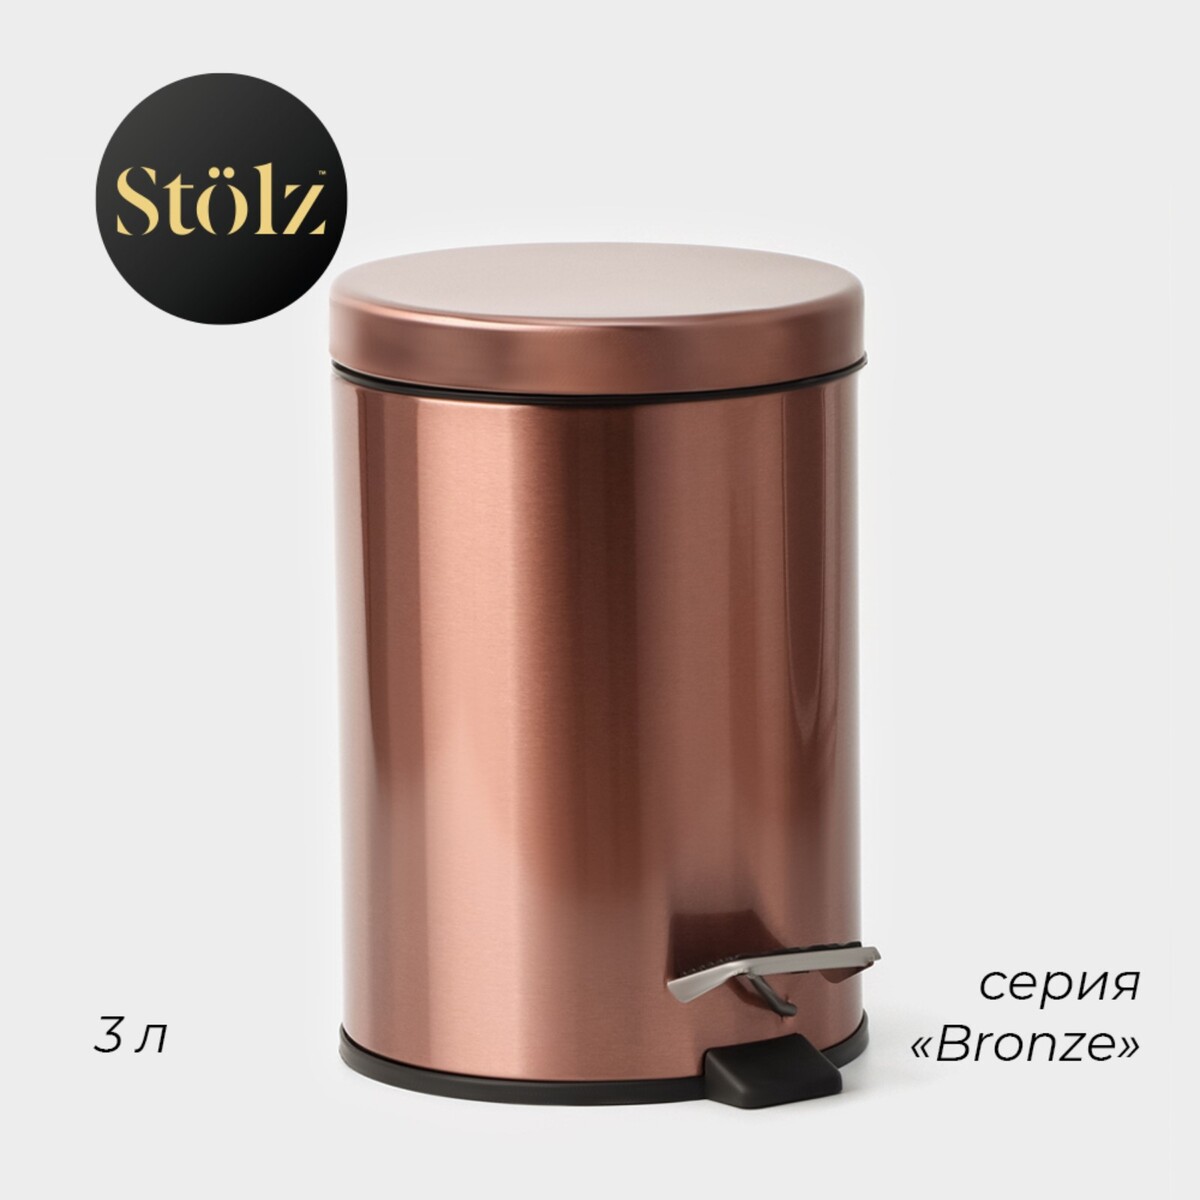 Ведро мусорное с педалью штольц stölz, 3 л, нержавеющая сталь, цвет бронзовый